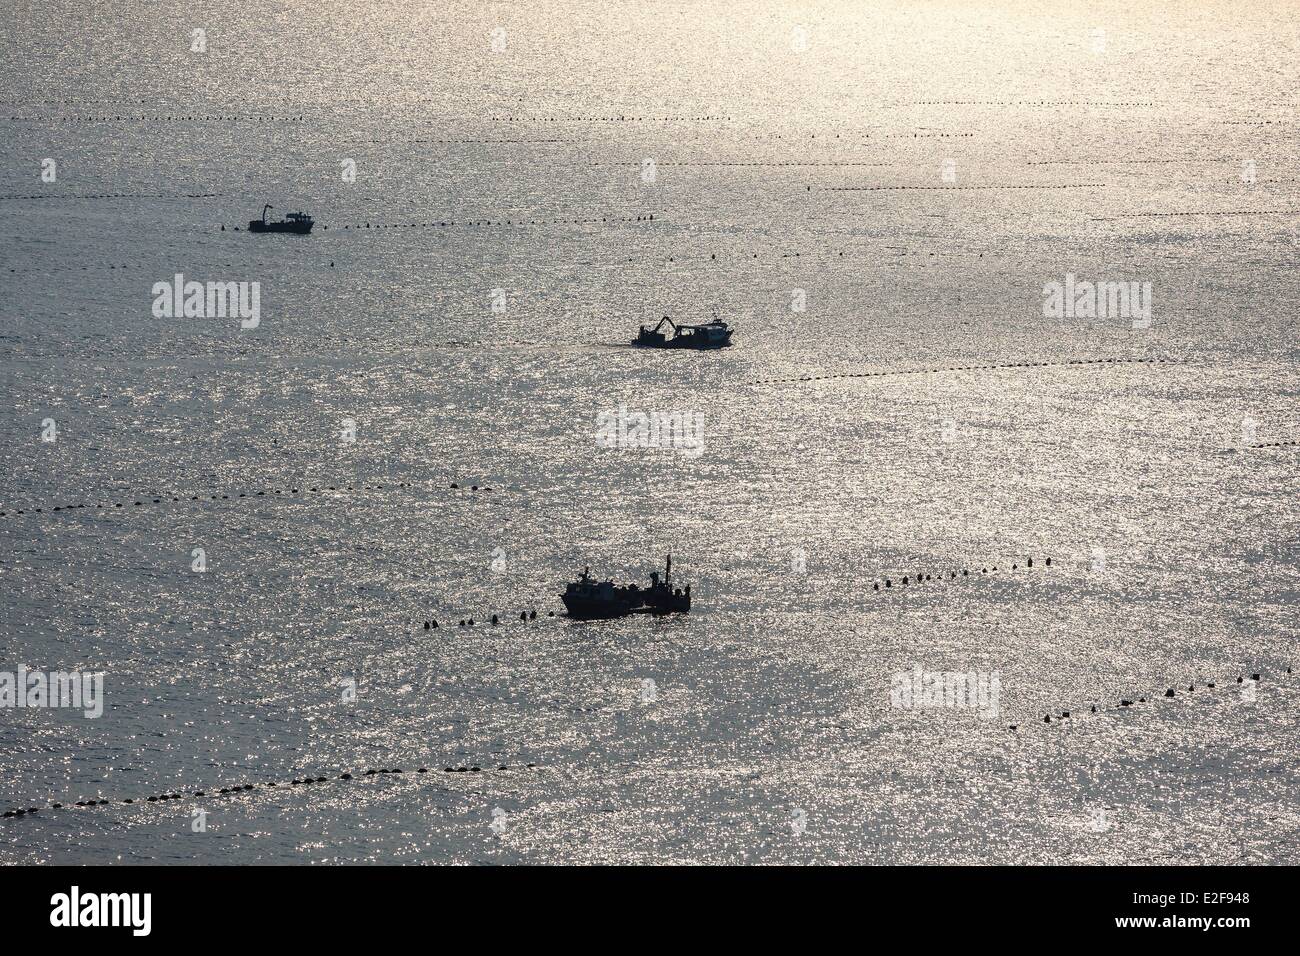 Francia, Vendee, La Faute-sur-Mer, mitilicoltura barche in corde campo (vista aerea) Foto Stock